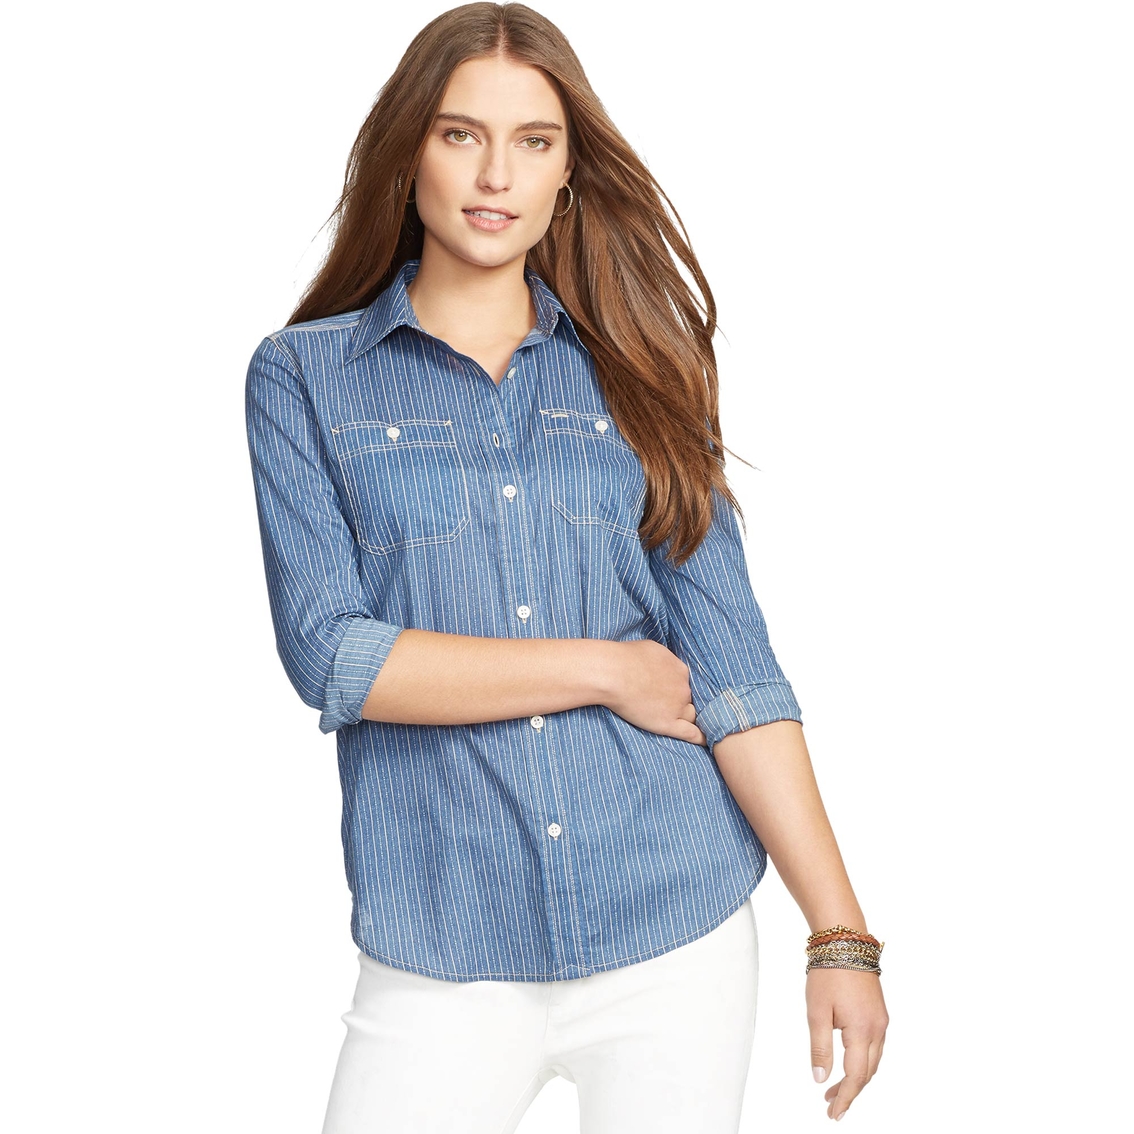 Lauren Jeans Co. Alizabeth Striped Button-down Shirt | Lauren Jeans Co ...